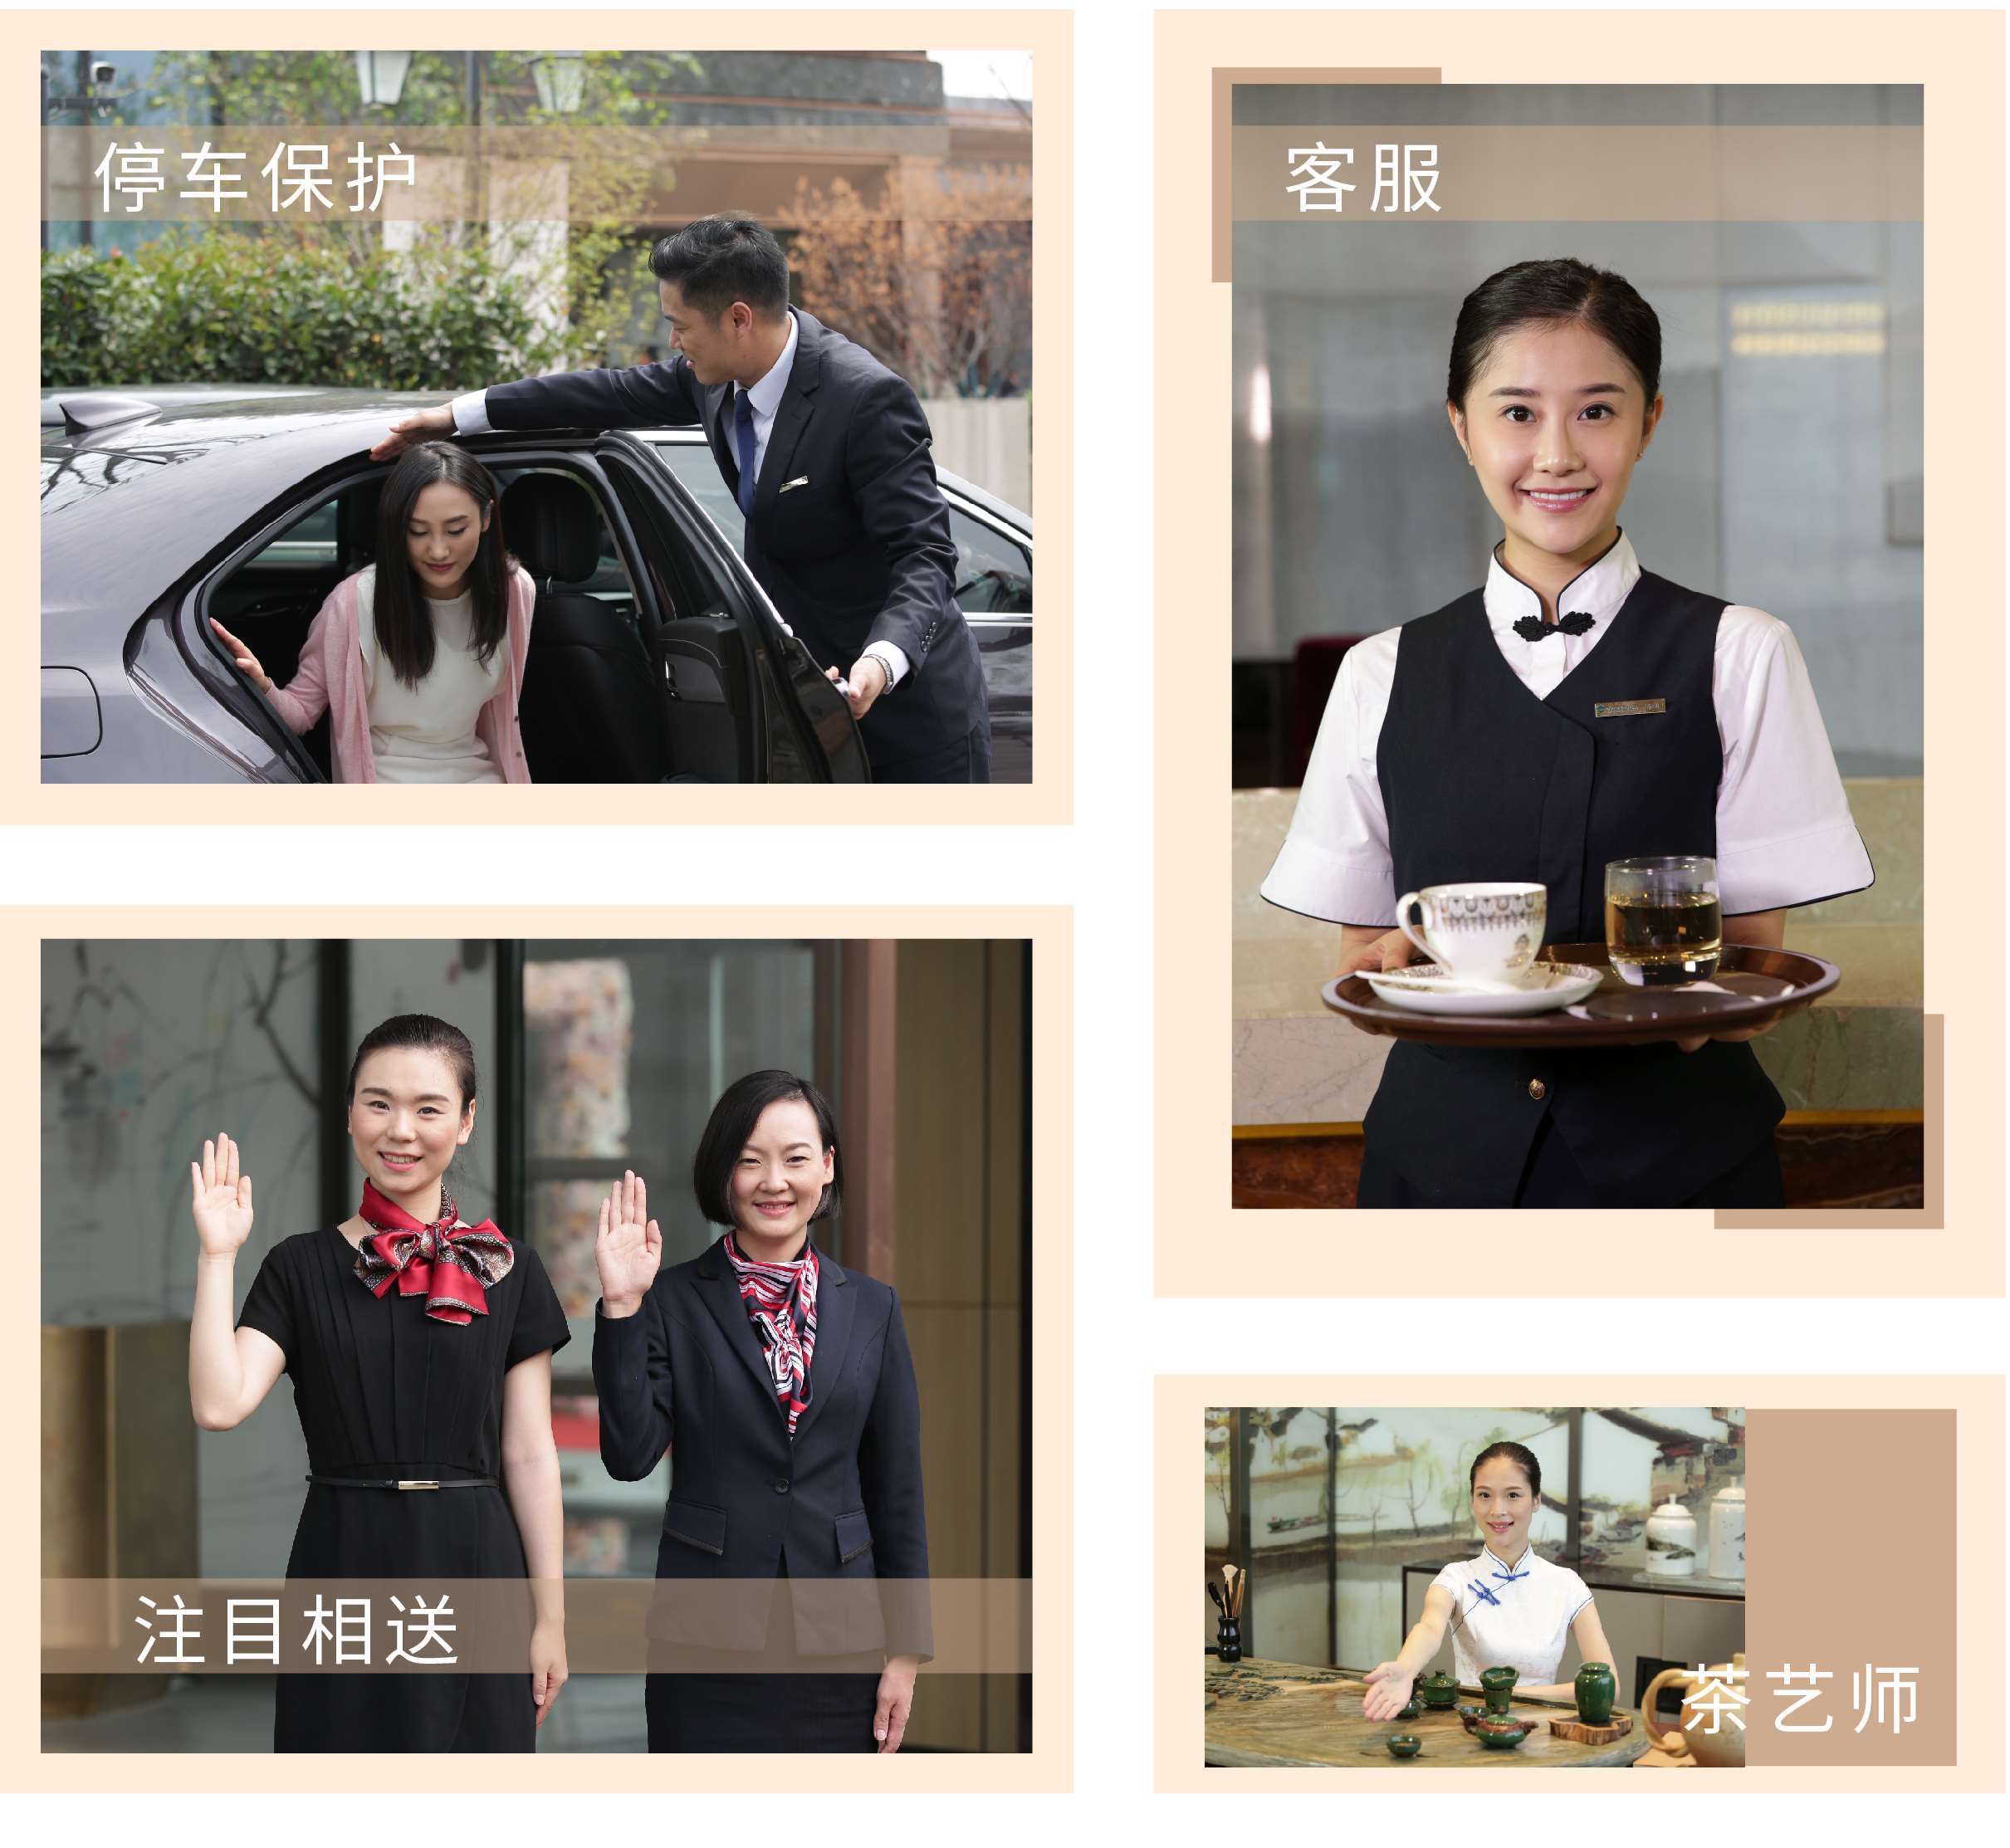 上海地产行业高端服务礼仪培训